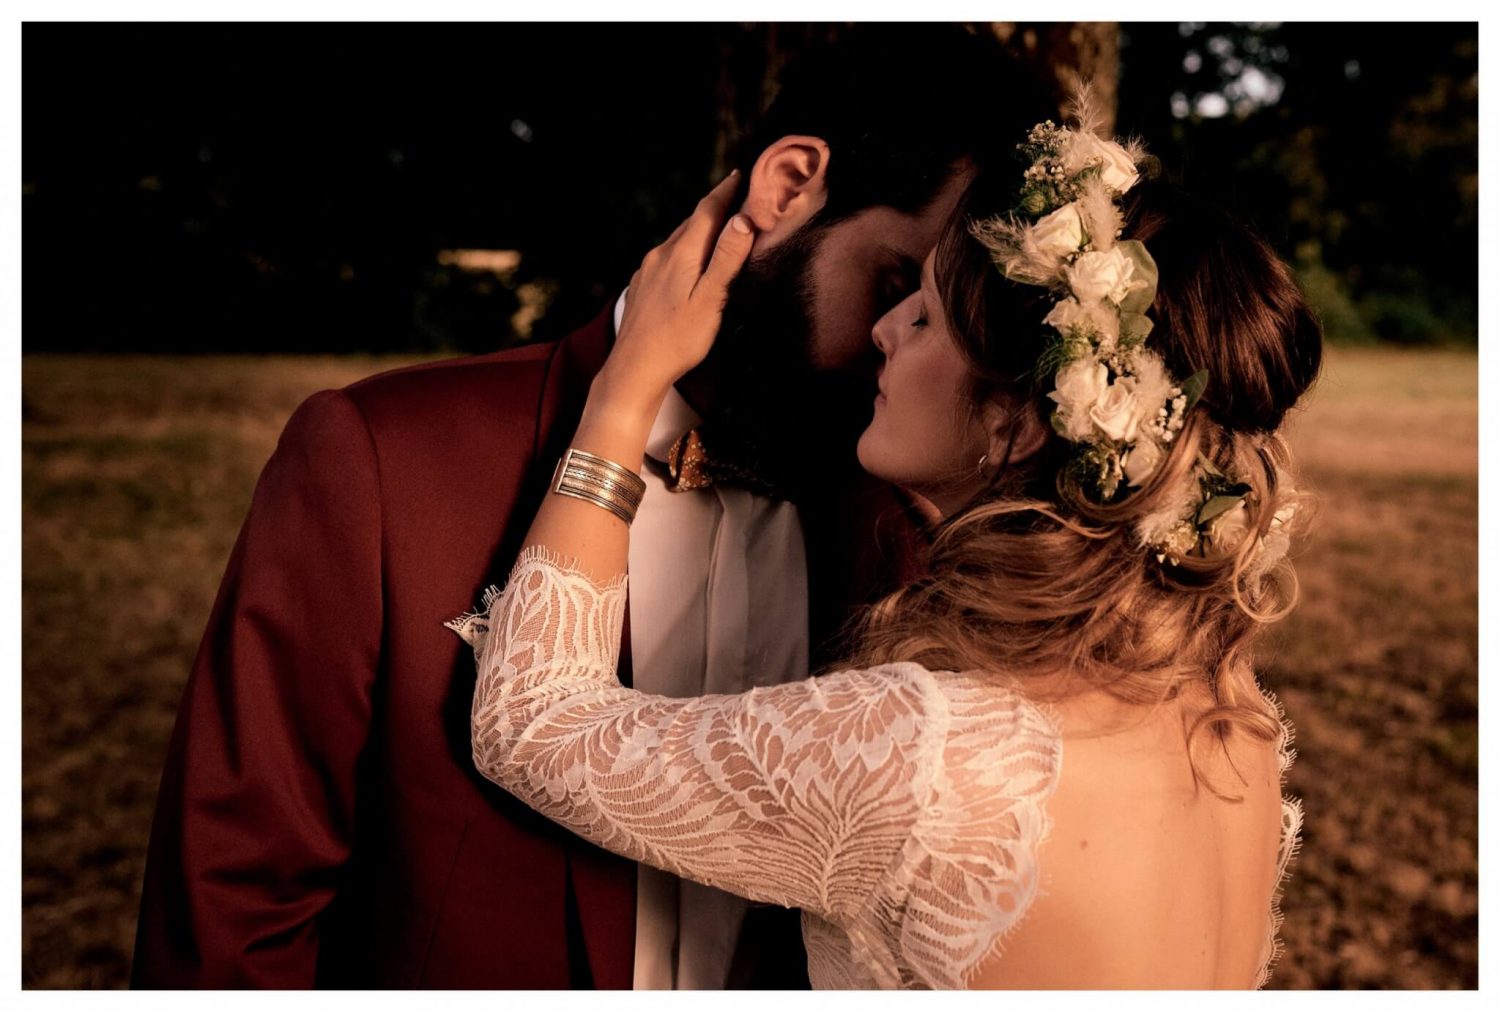 Séance couple de photographie de mariage à Paris| Photographe Mariage Paris